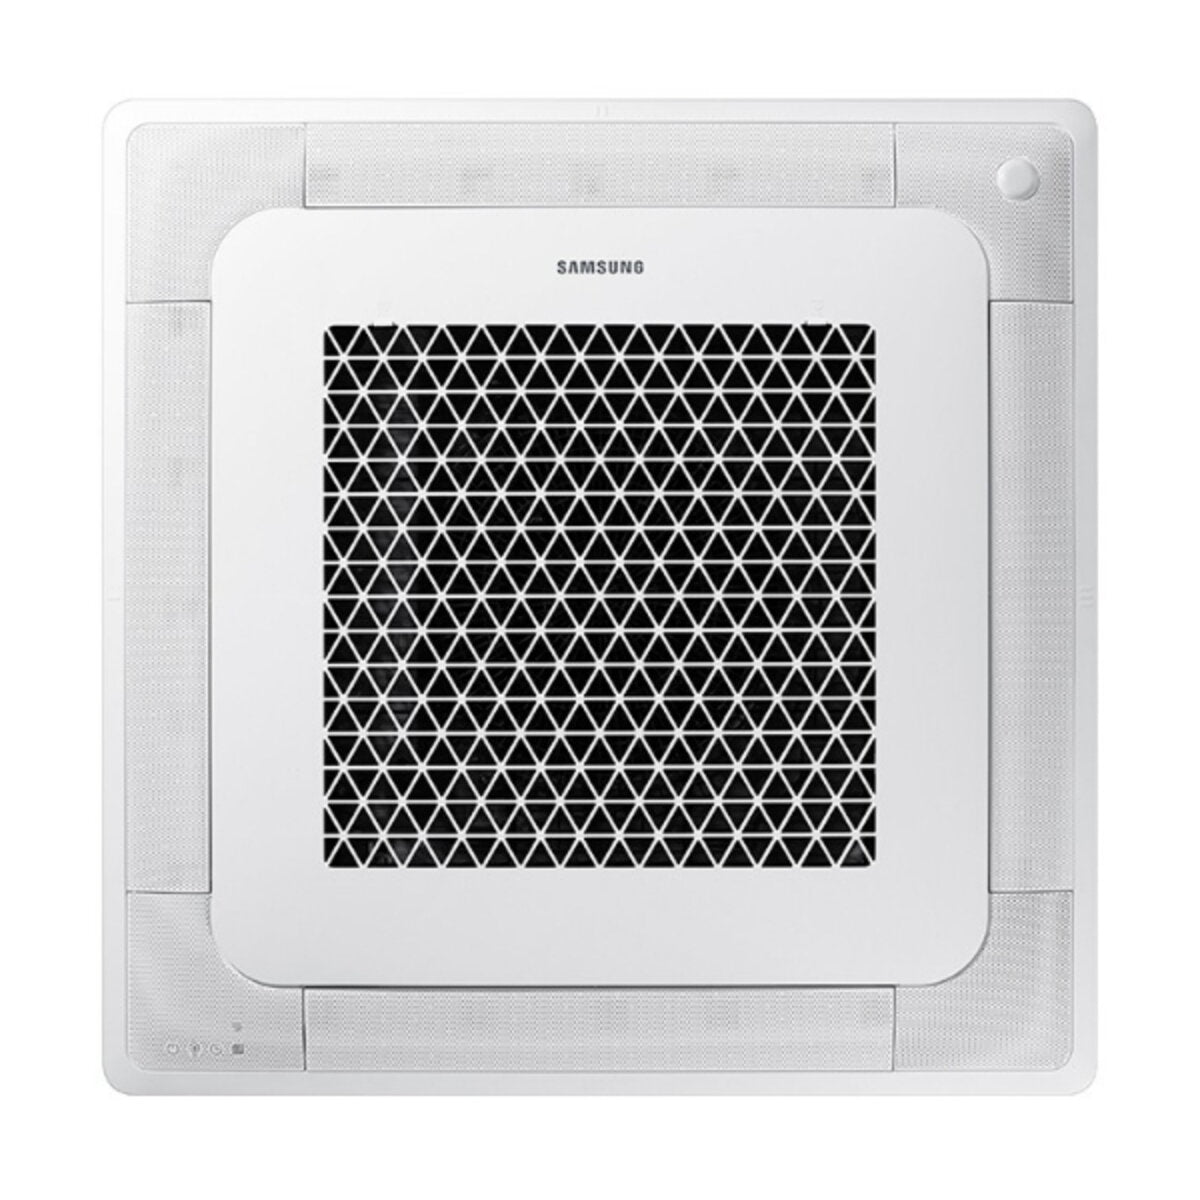 Samsung Klimaanlage Windfree 4-Wege Square Split 9000 + 9000 + 12000 + 12000 BTU Inverter A++ Außengerät 8,0 kW